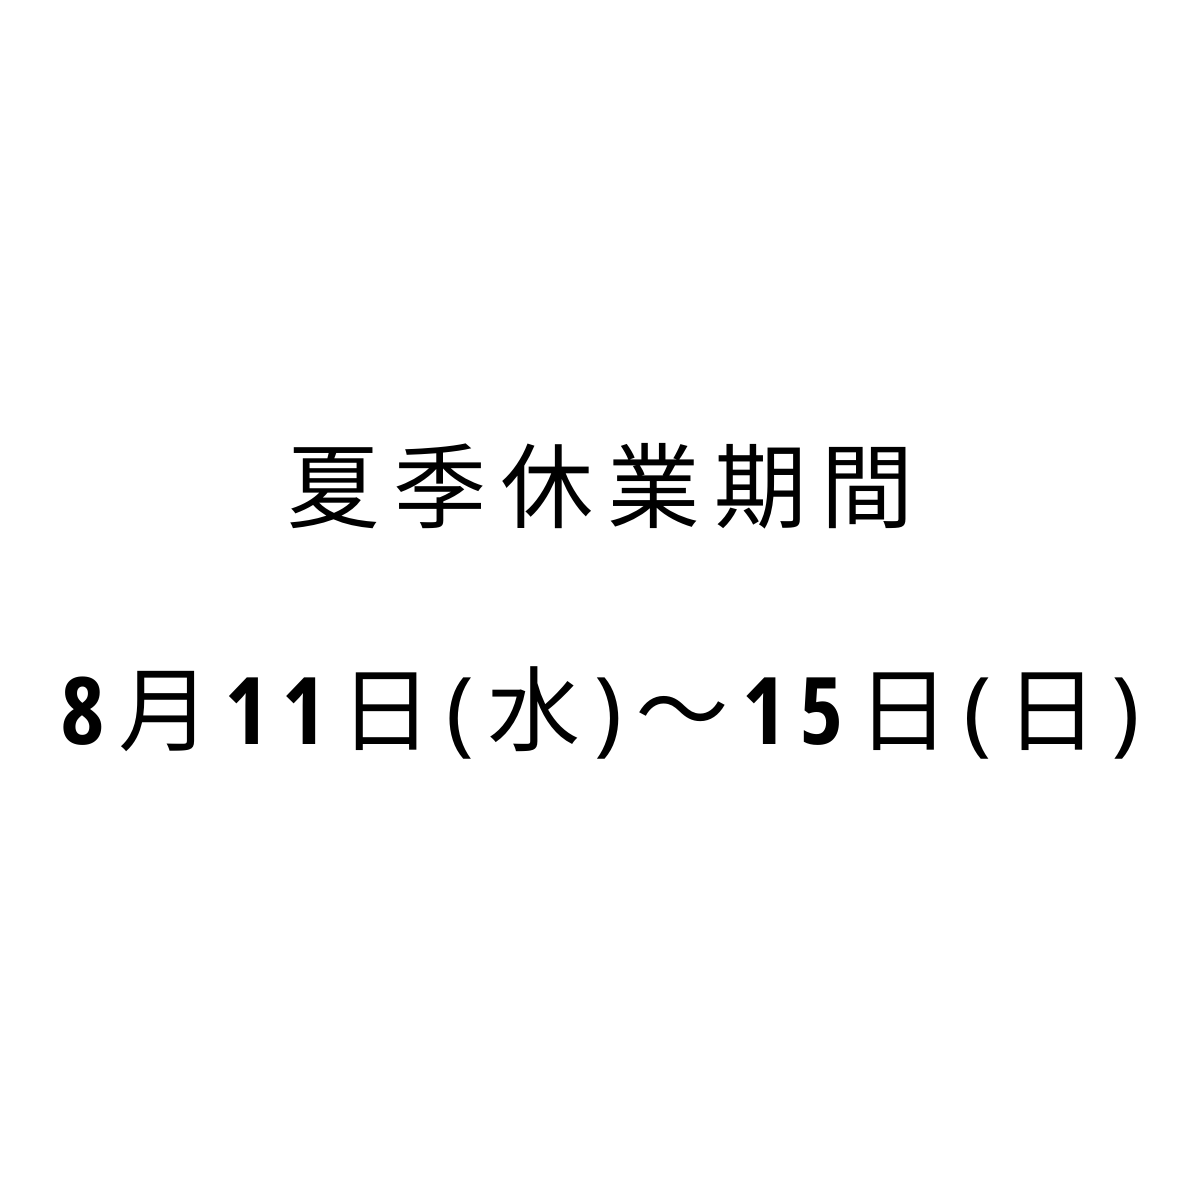 【夏季休業期間のお知らせ】2021年8月11日(水)〜15日(日)